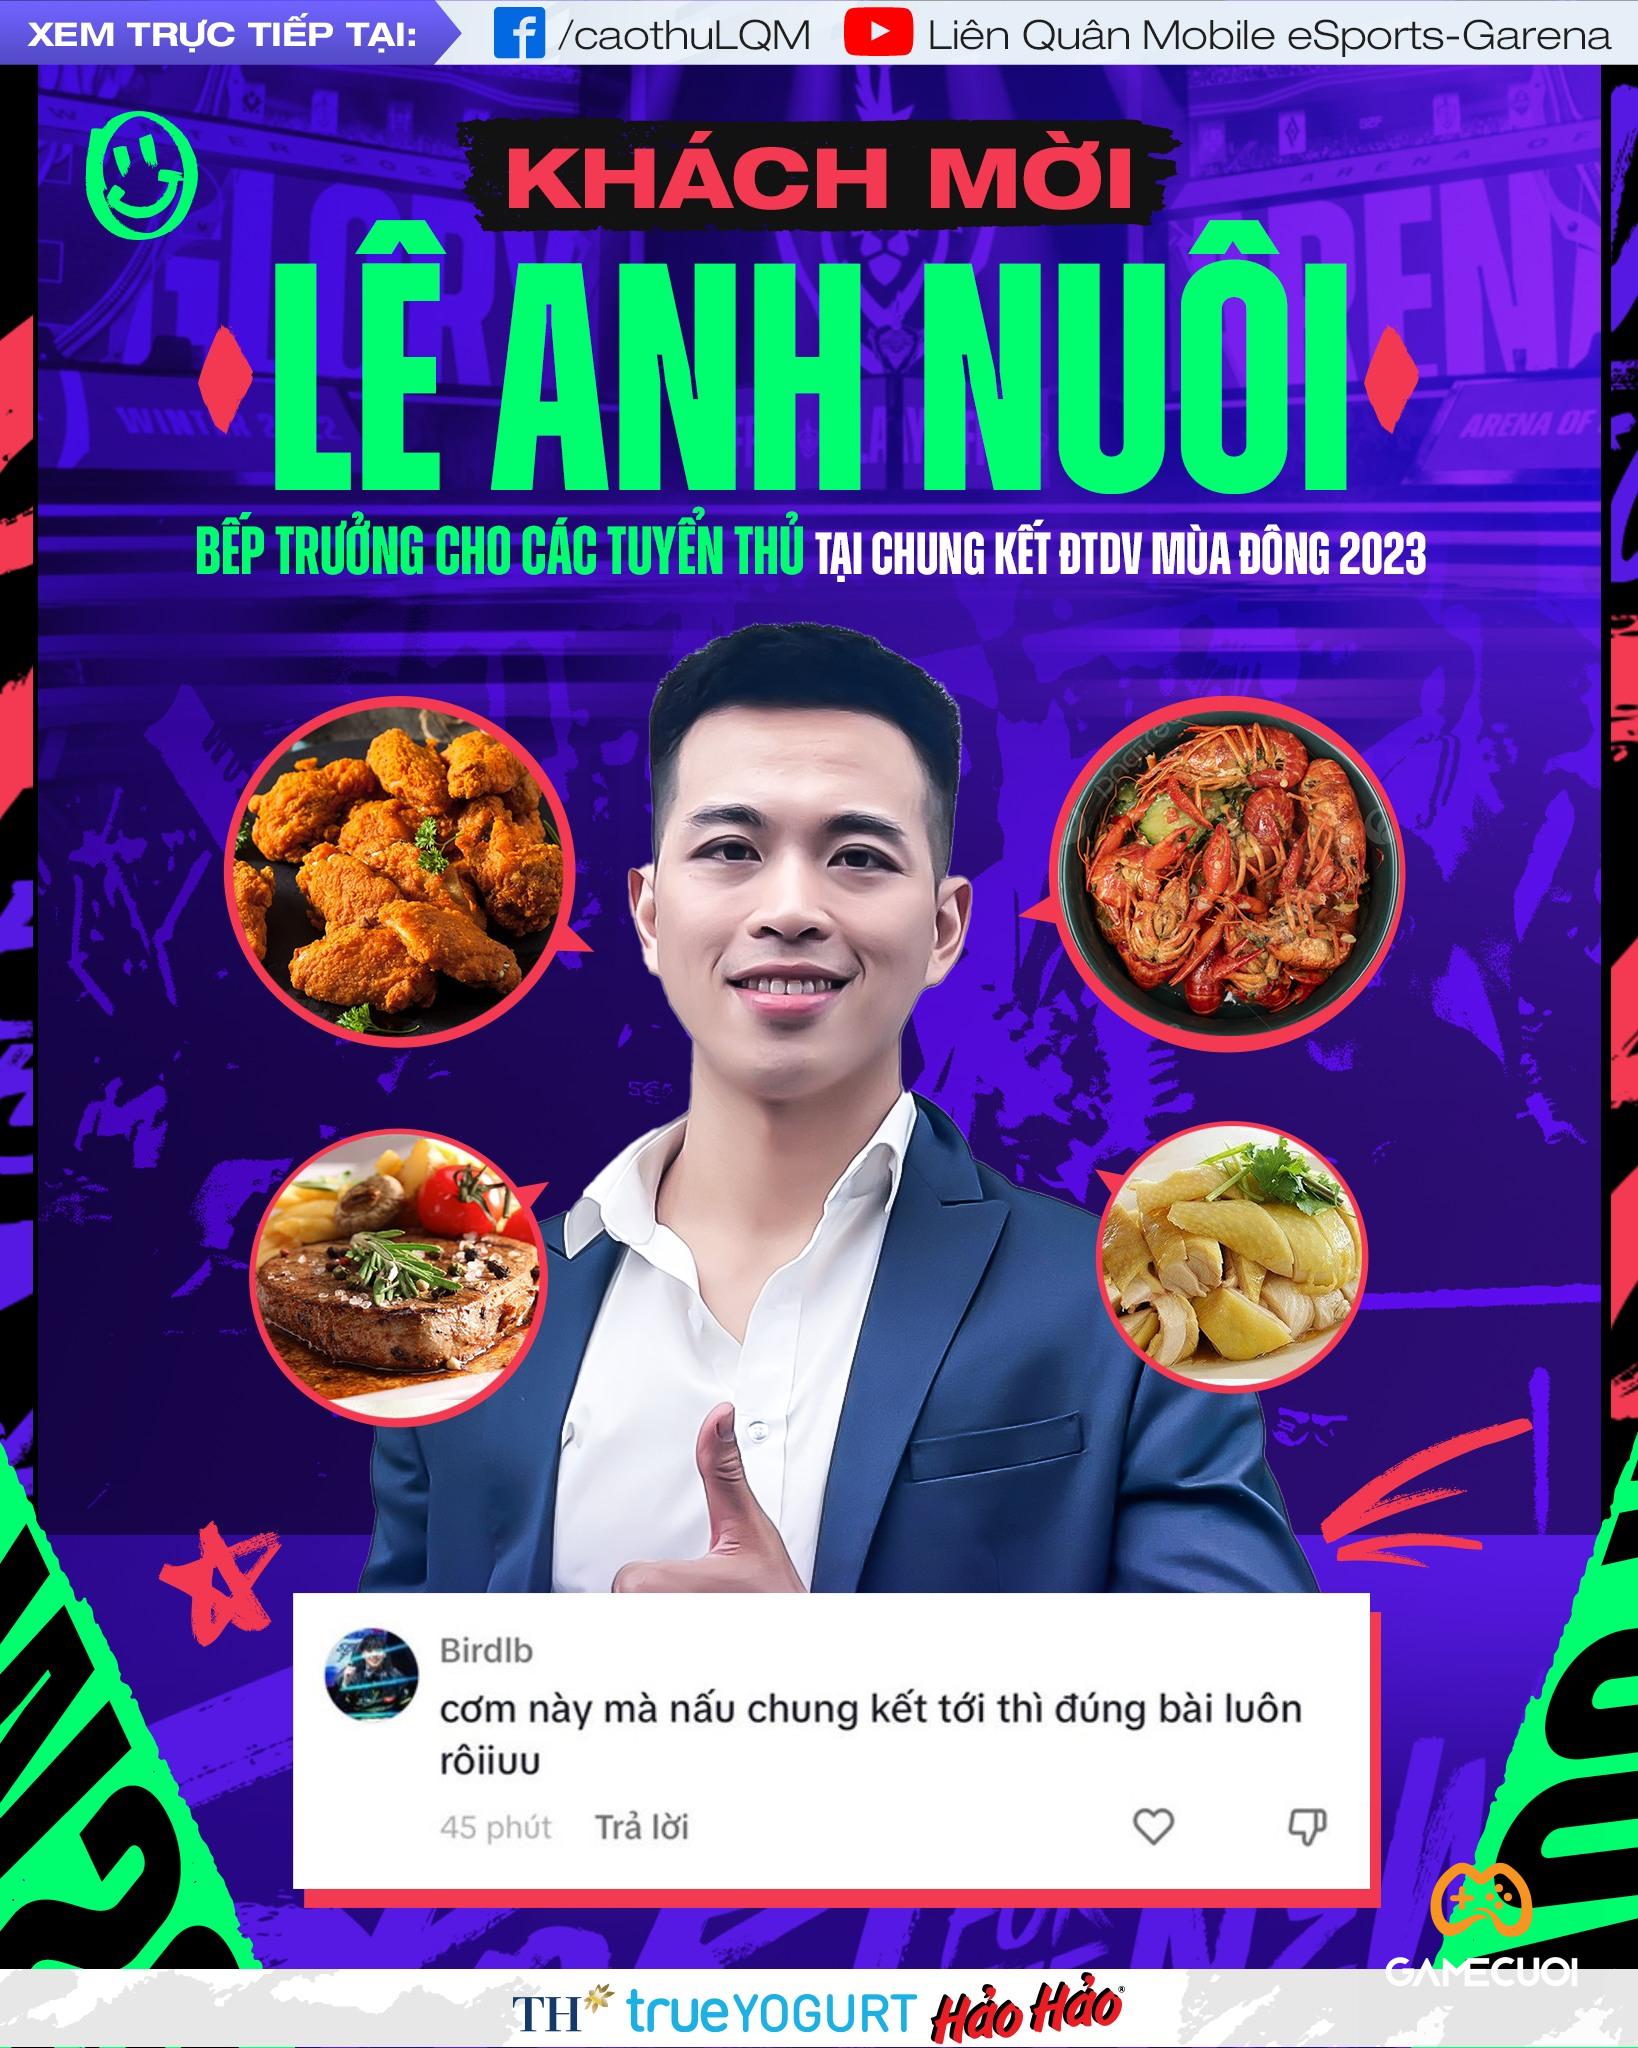 Lê Anh Nuôi – “bếp trưởng” đồng hành cùng các tuyển thủ Liên Quân trong ĐTDV 2023